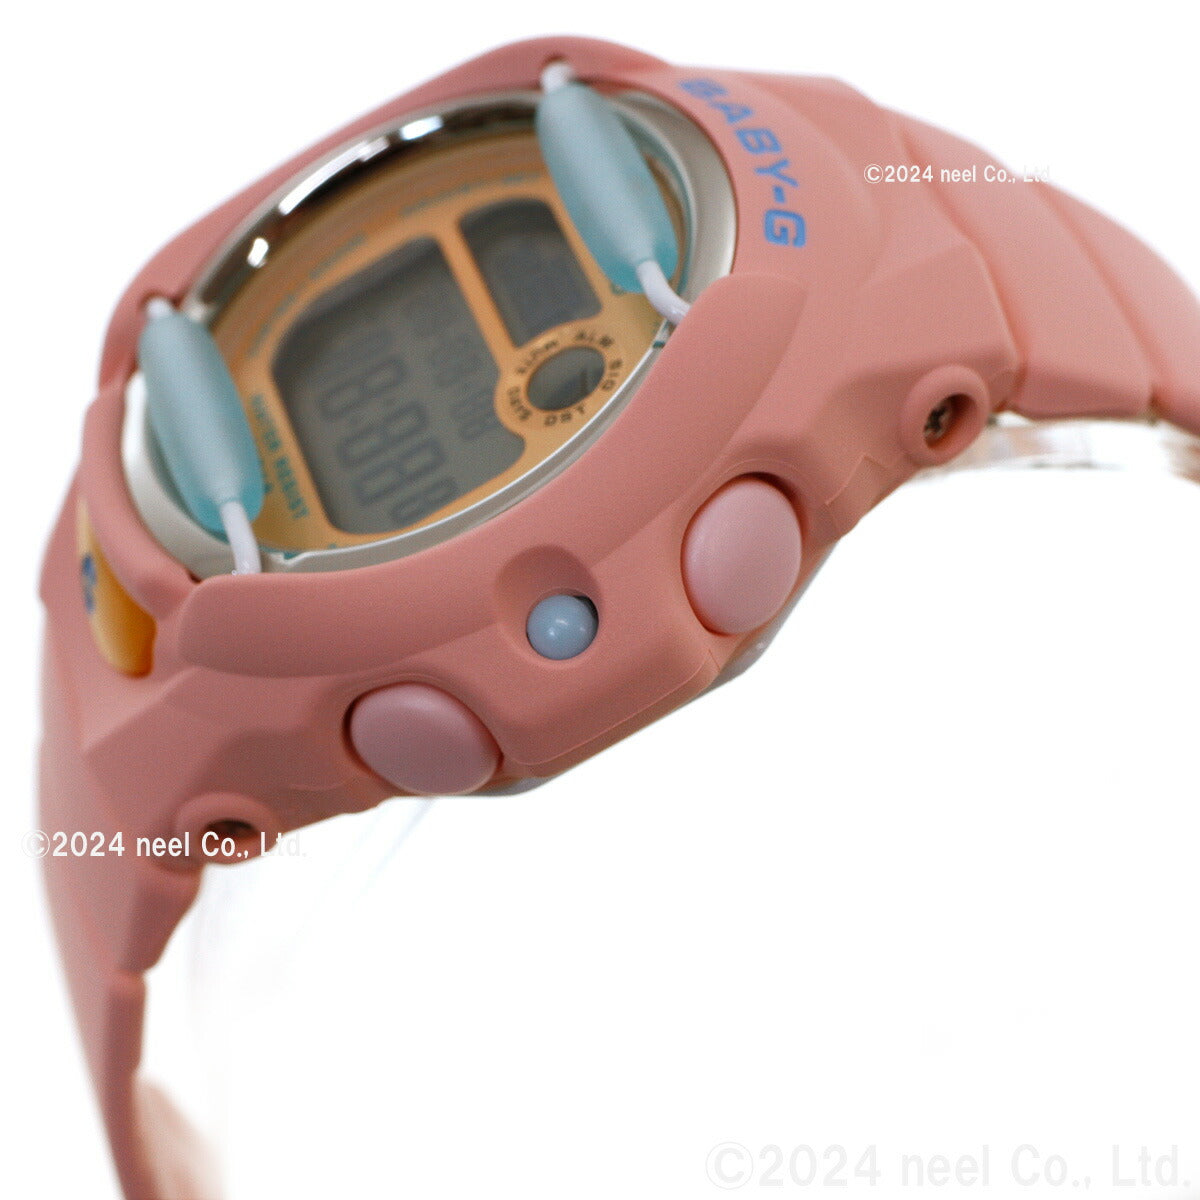 BABY-G カシオ ベビーG レディース 腕時計 BG-169PB-4JF 珊瑚 イメージ コーラルピンク